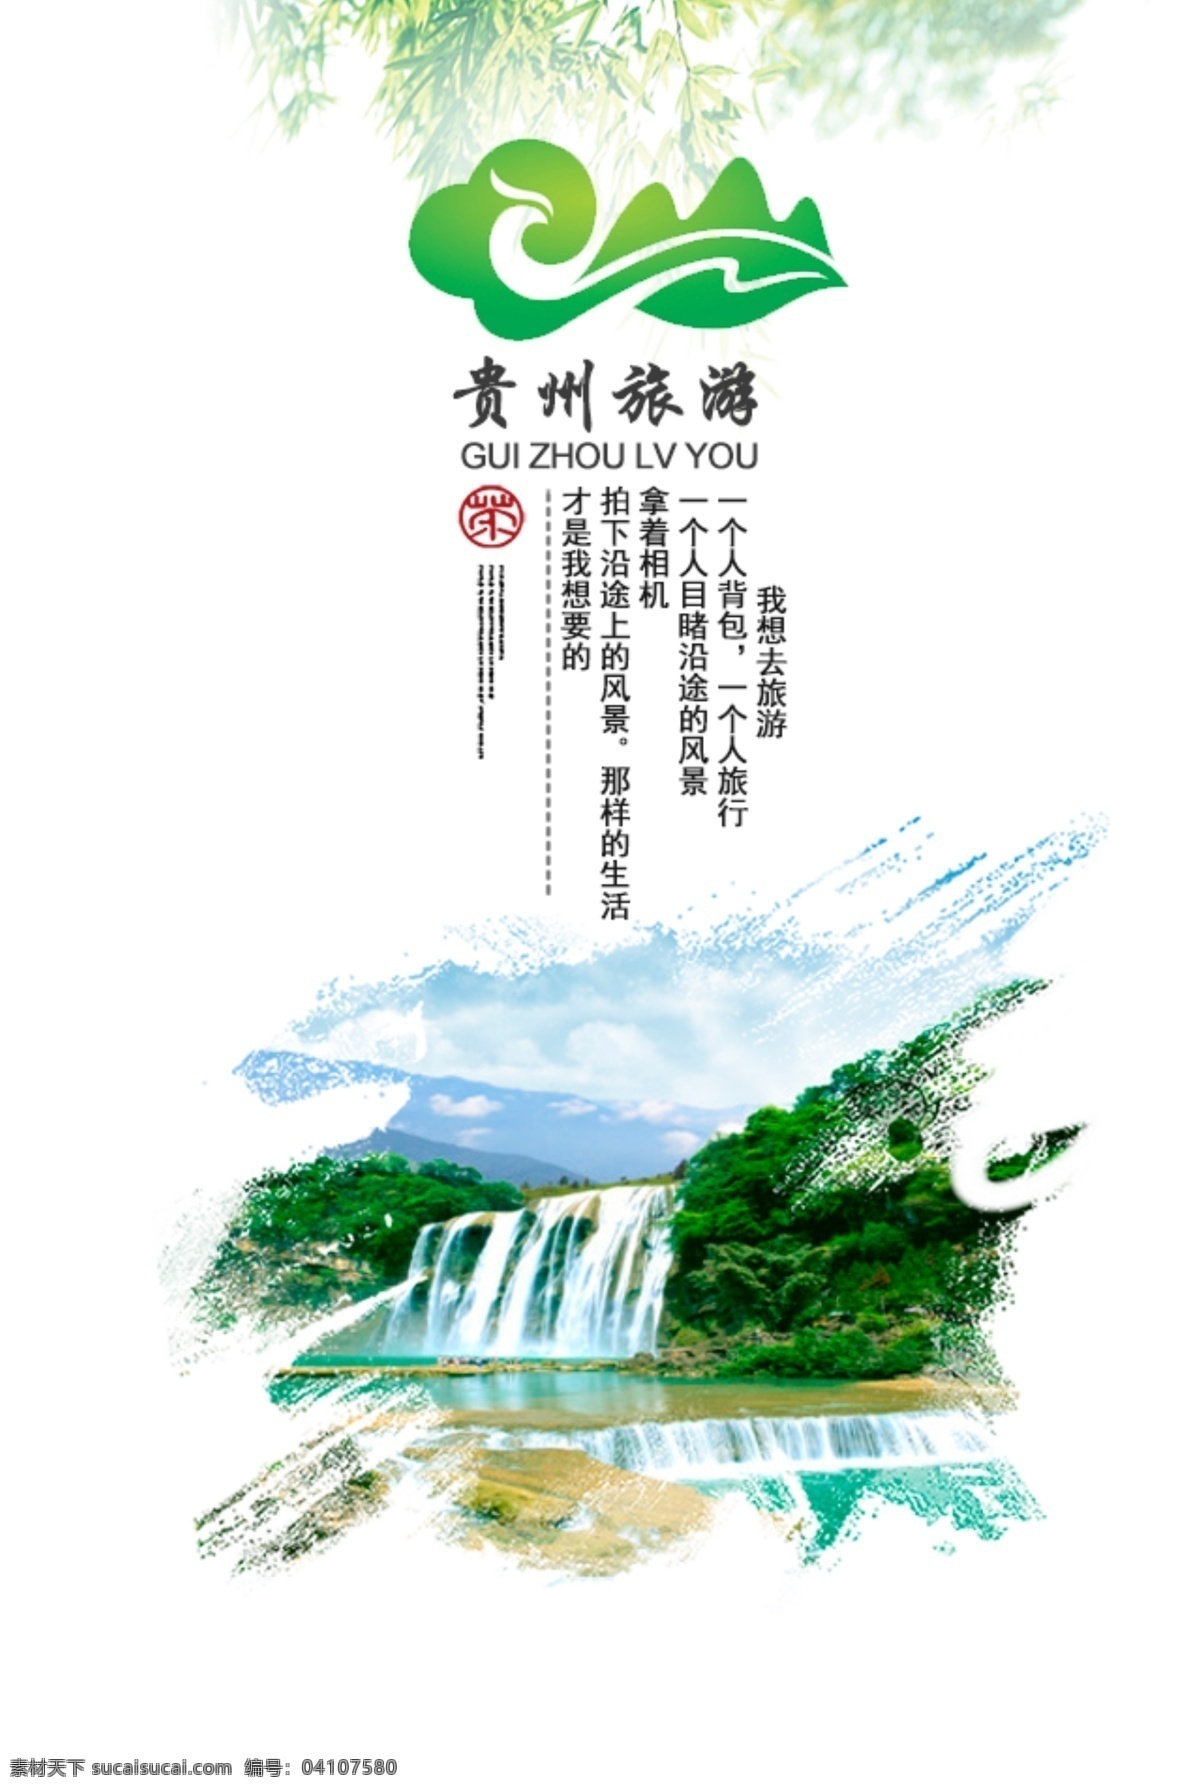 贵州旅游海报 旅游 贵州 贵州旅游 海报 景区